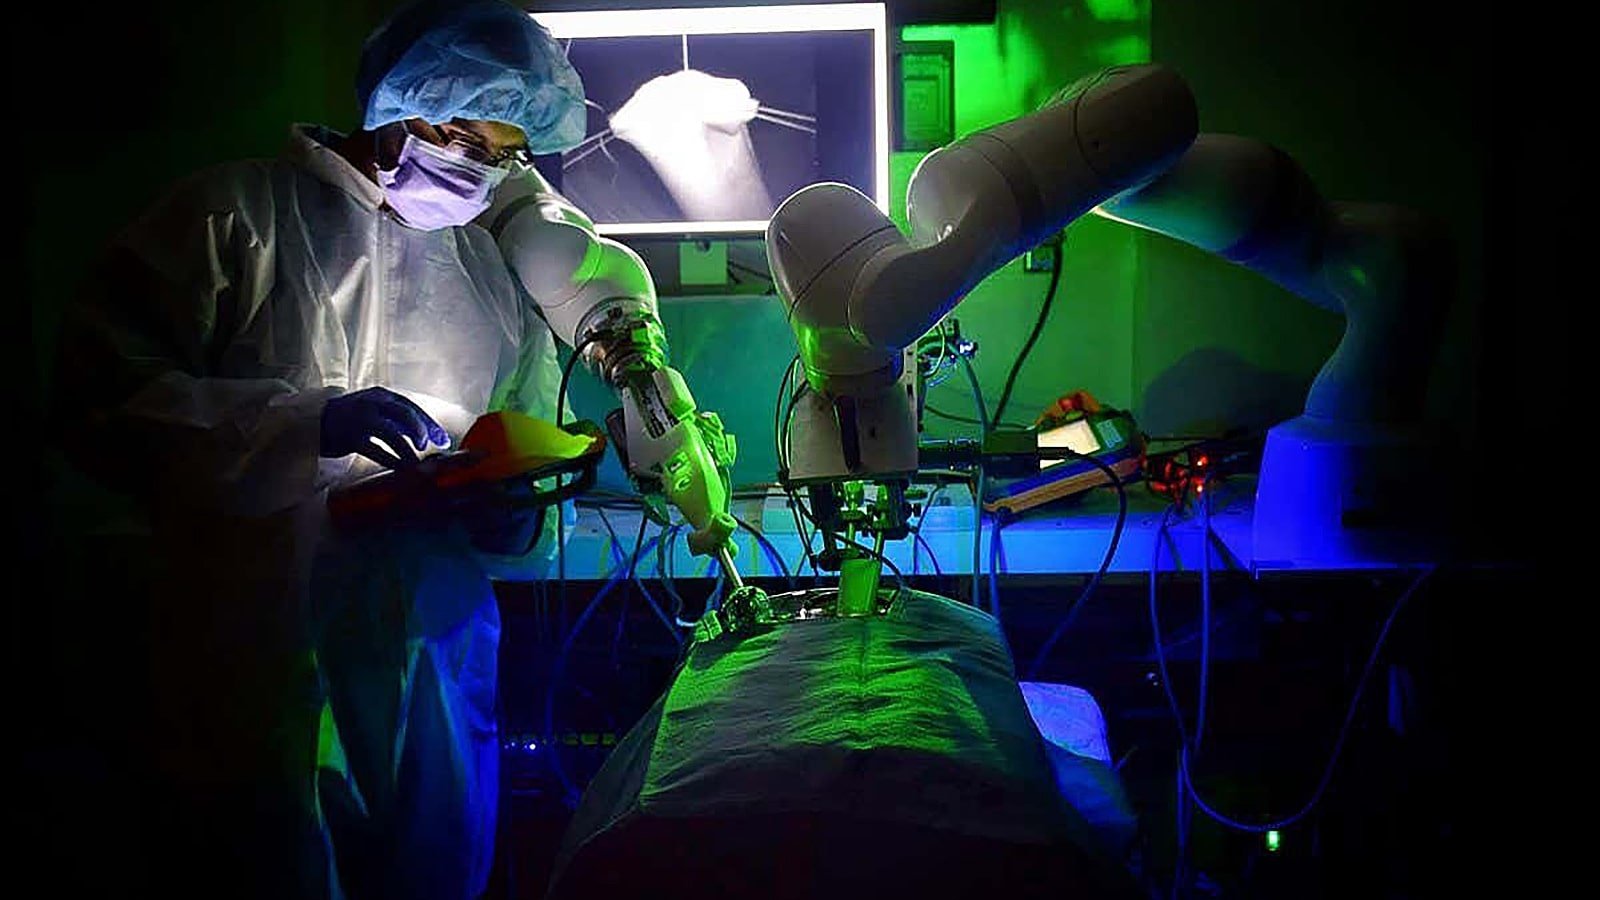 Robot chirurgico trattamenti